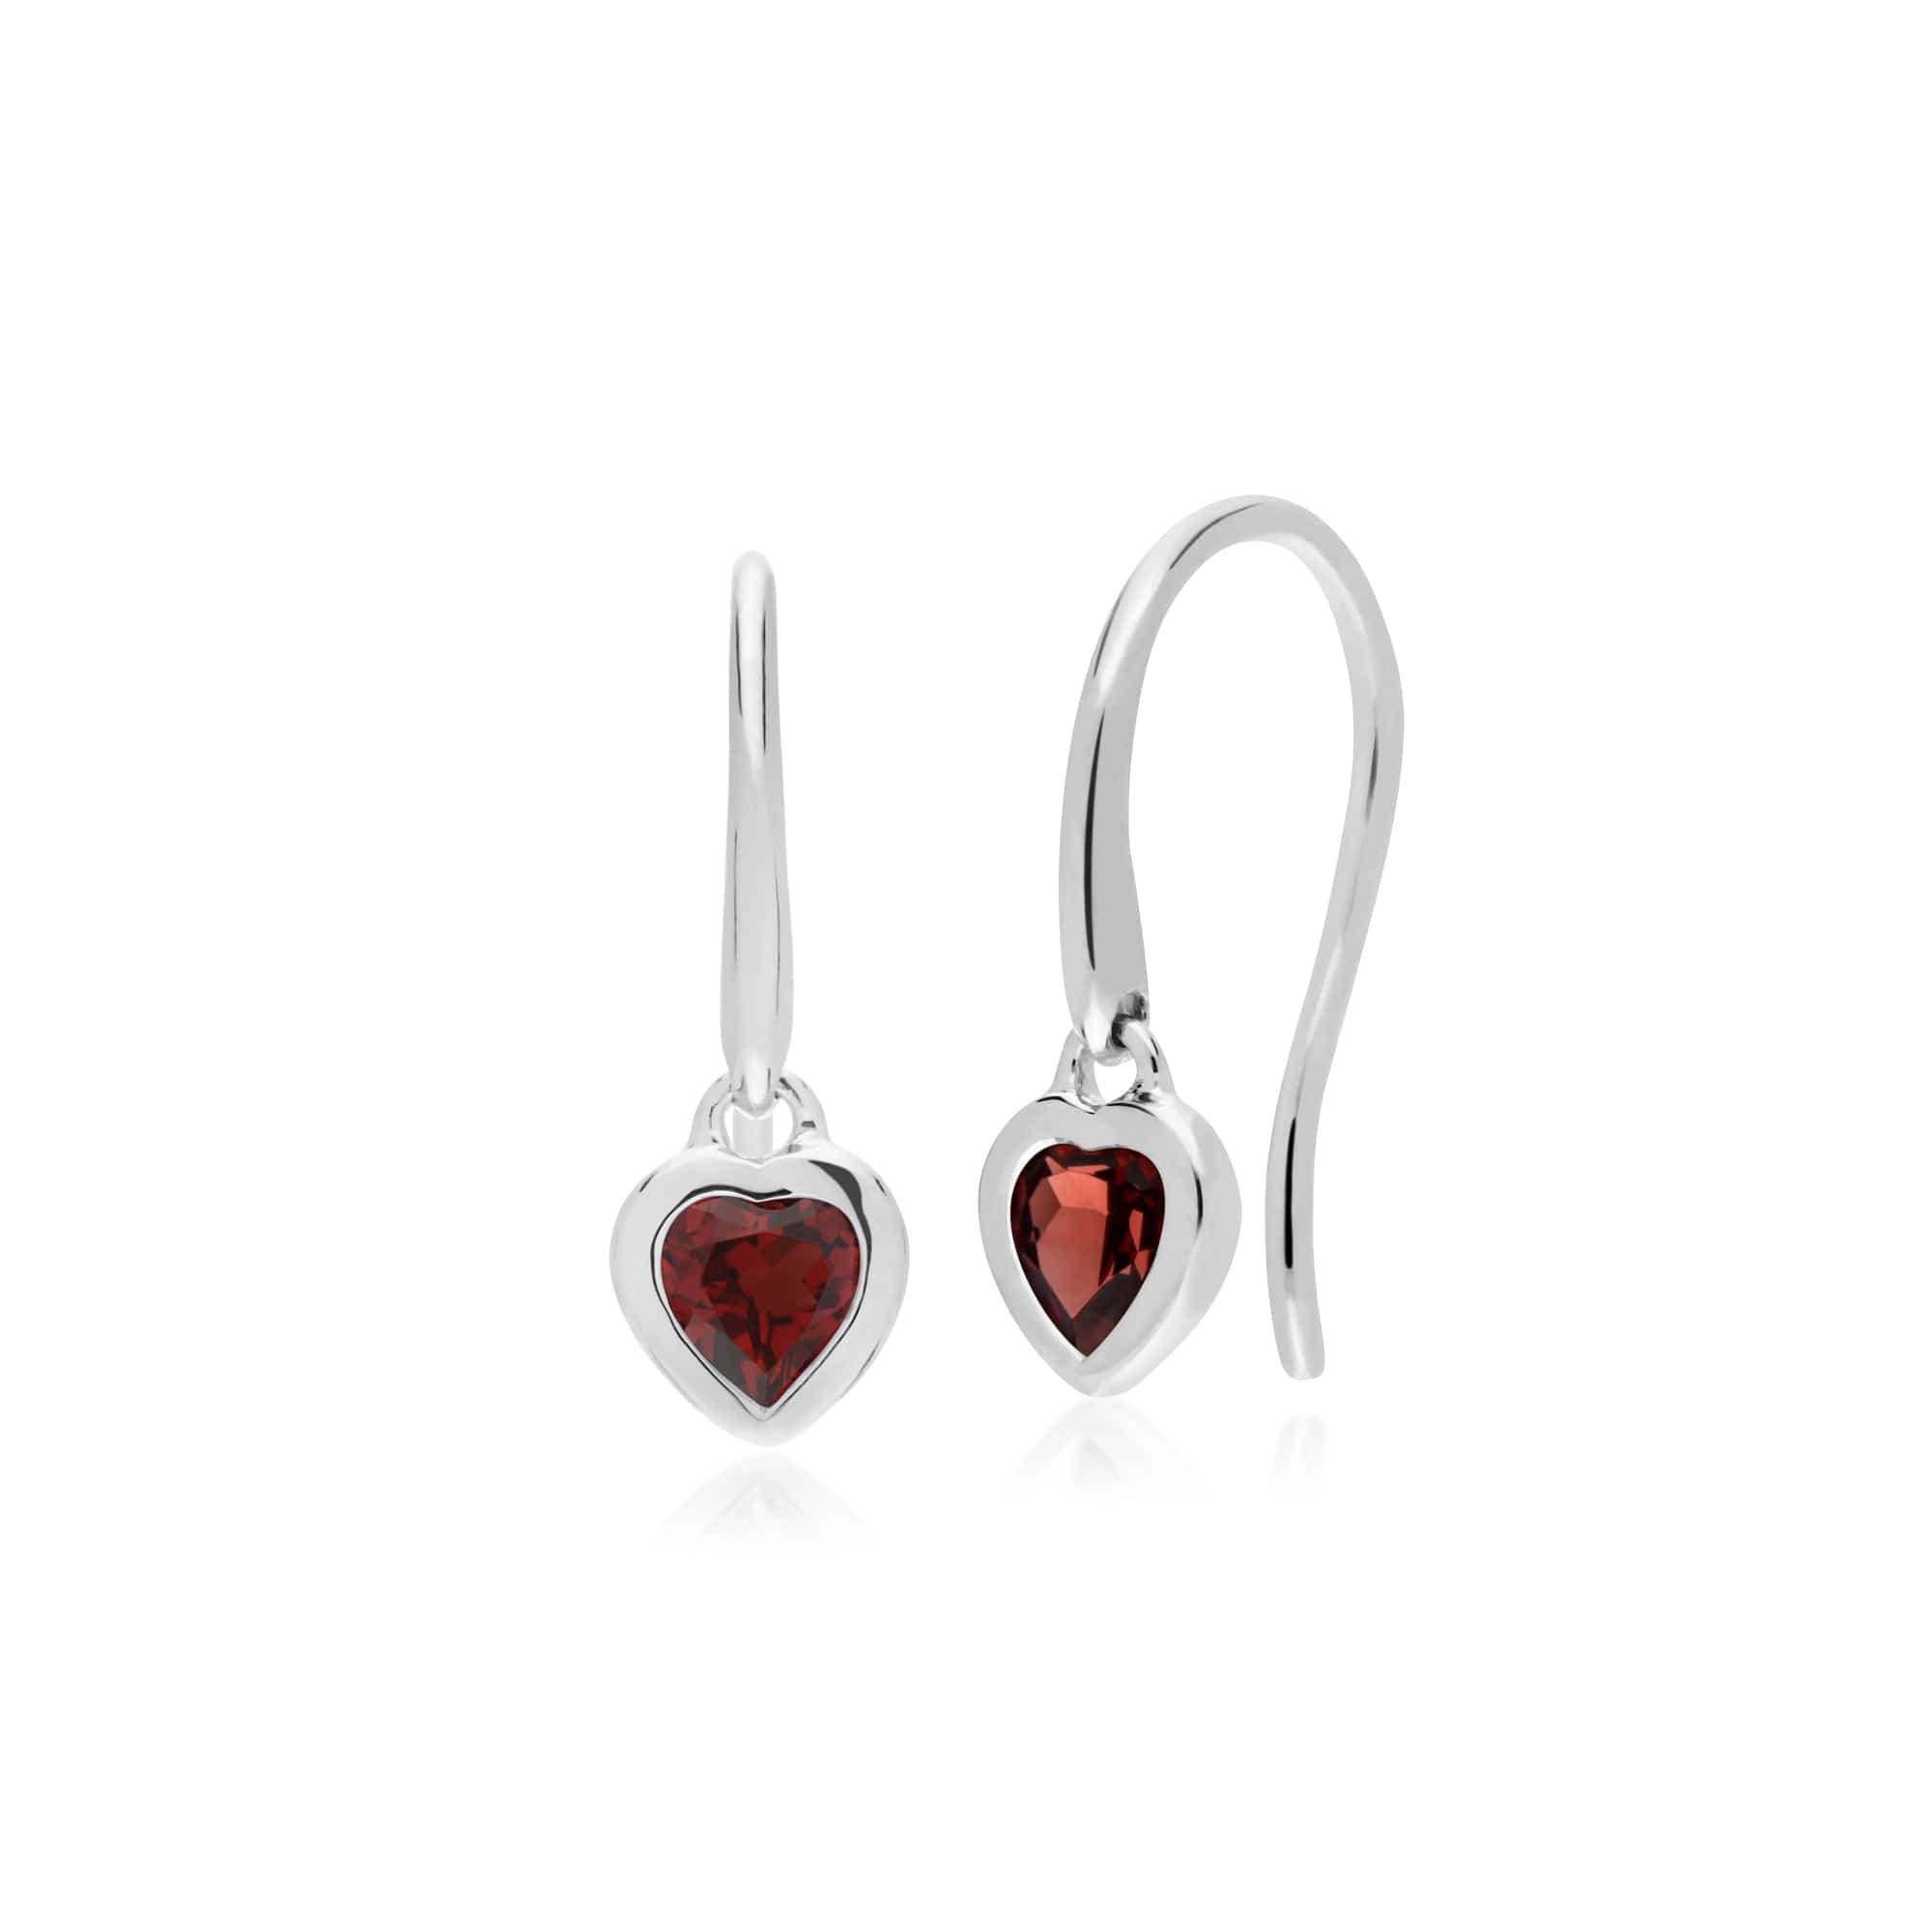 270E026203925-270P028703925 Classic Heart Garnet Drop Earrings & Pendant Set in 925 Sterling Silver 2